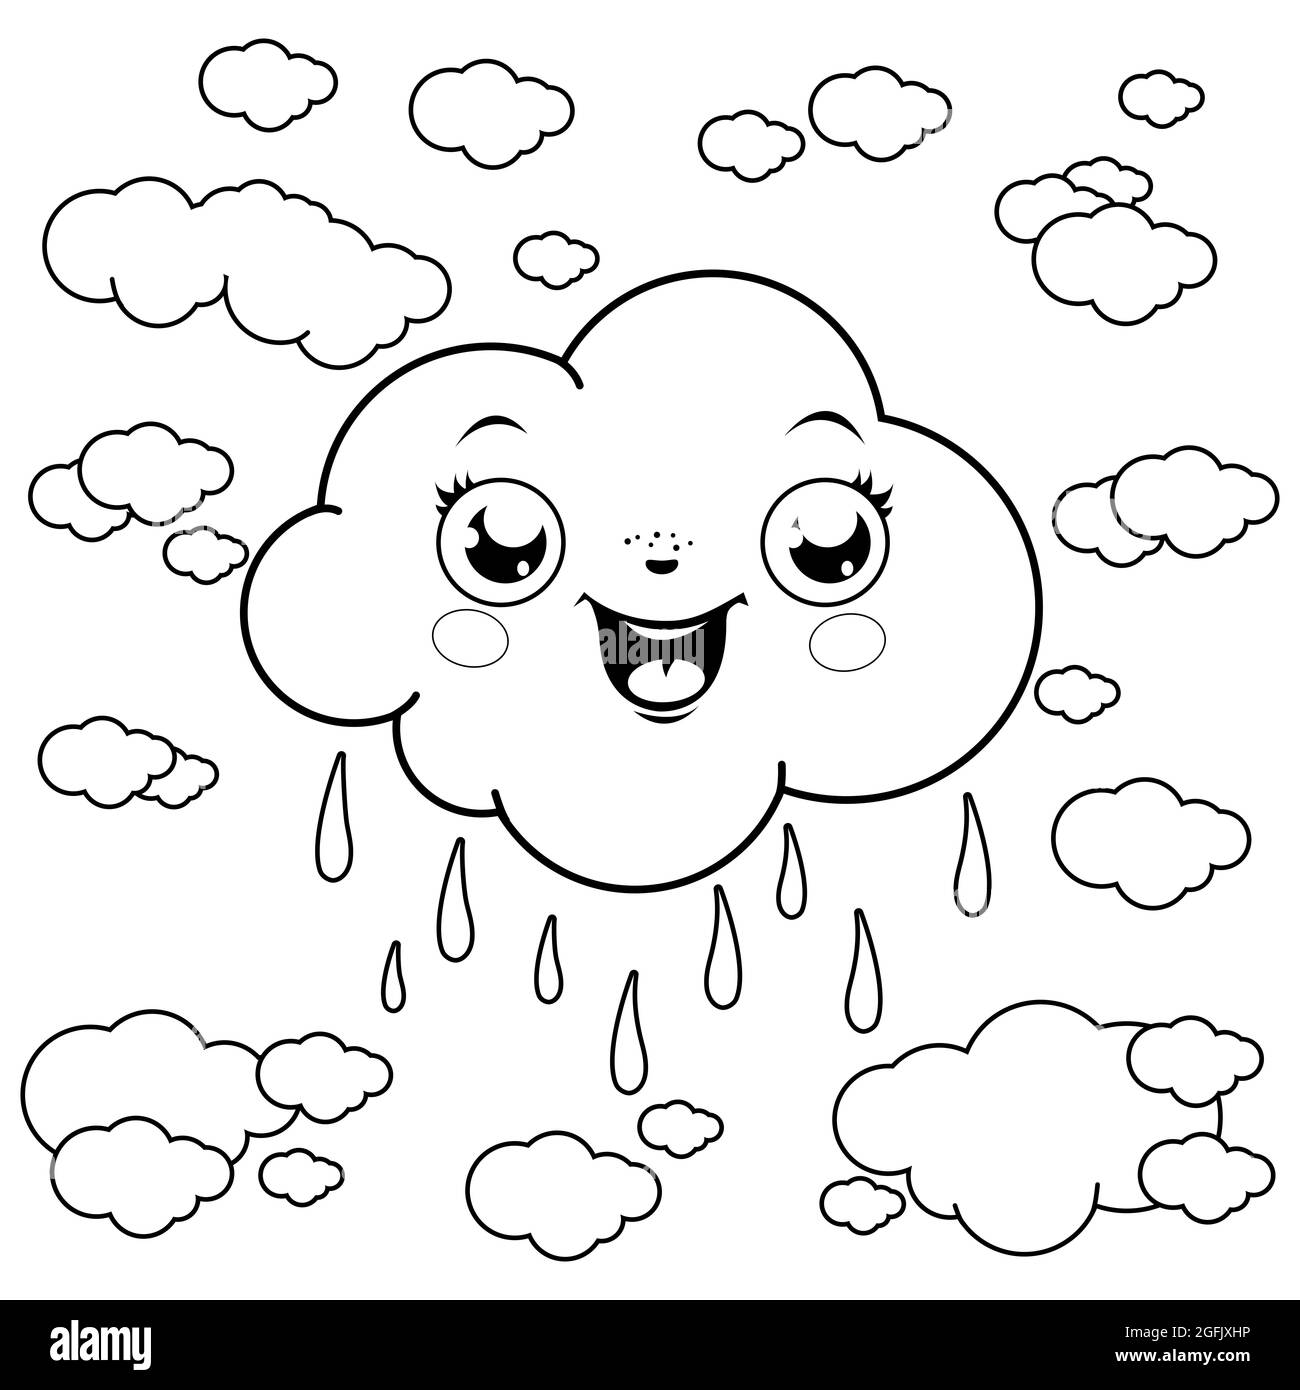 Illustration von Wolken, die am Himmel regnen. Schwarz-Weiß-Malseite Stockfoto